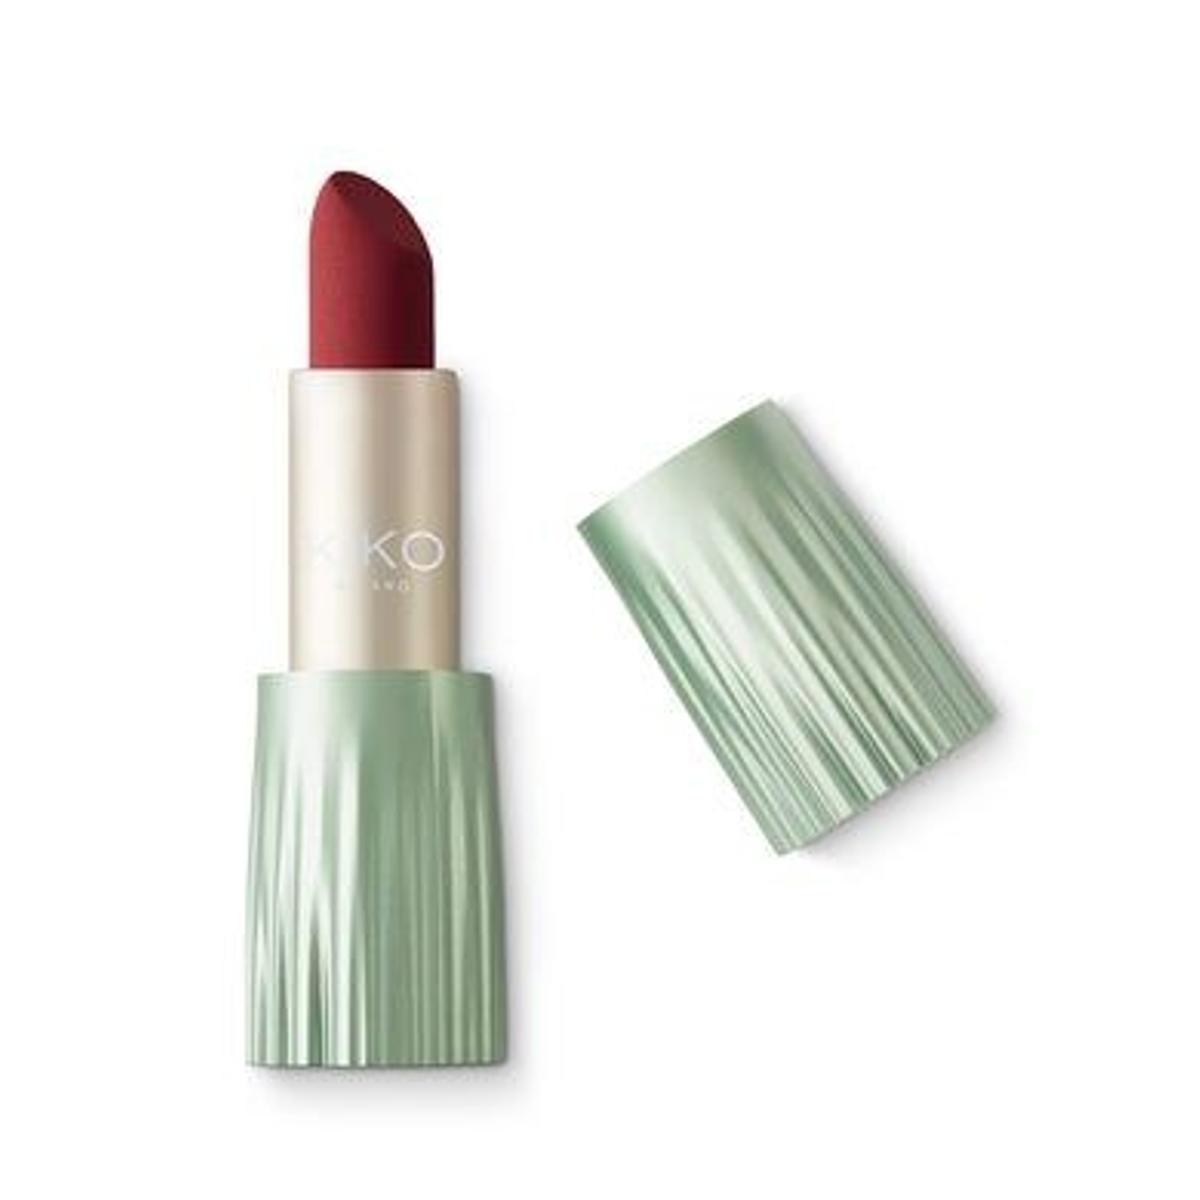 Free Soul Lipstick de Kiko (Precio: 10,95 euros. Si aprovechas el descuento del 70%, lo tienes ahora por 3,25 euros)